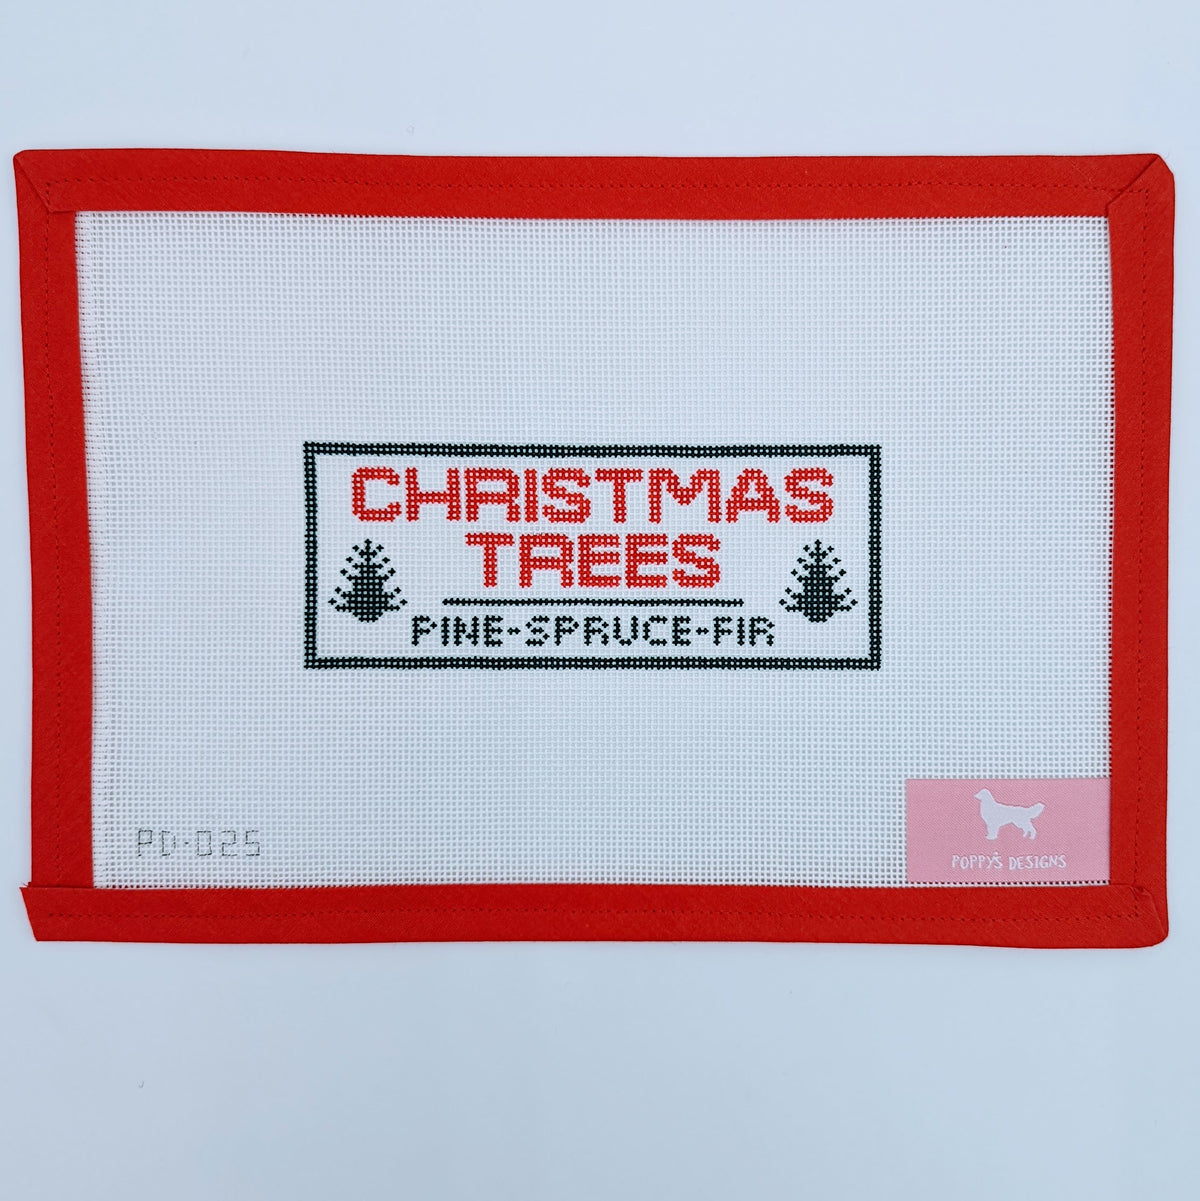 Christmas Trees Sign